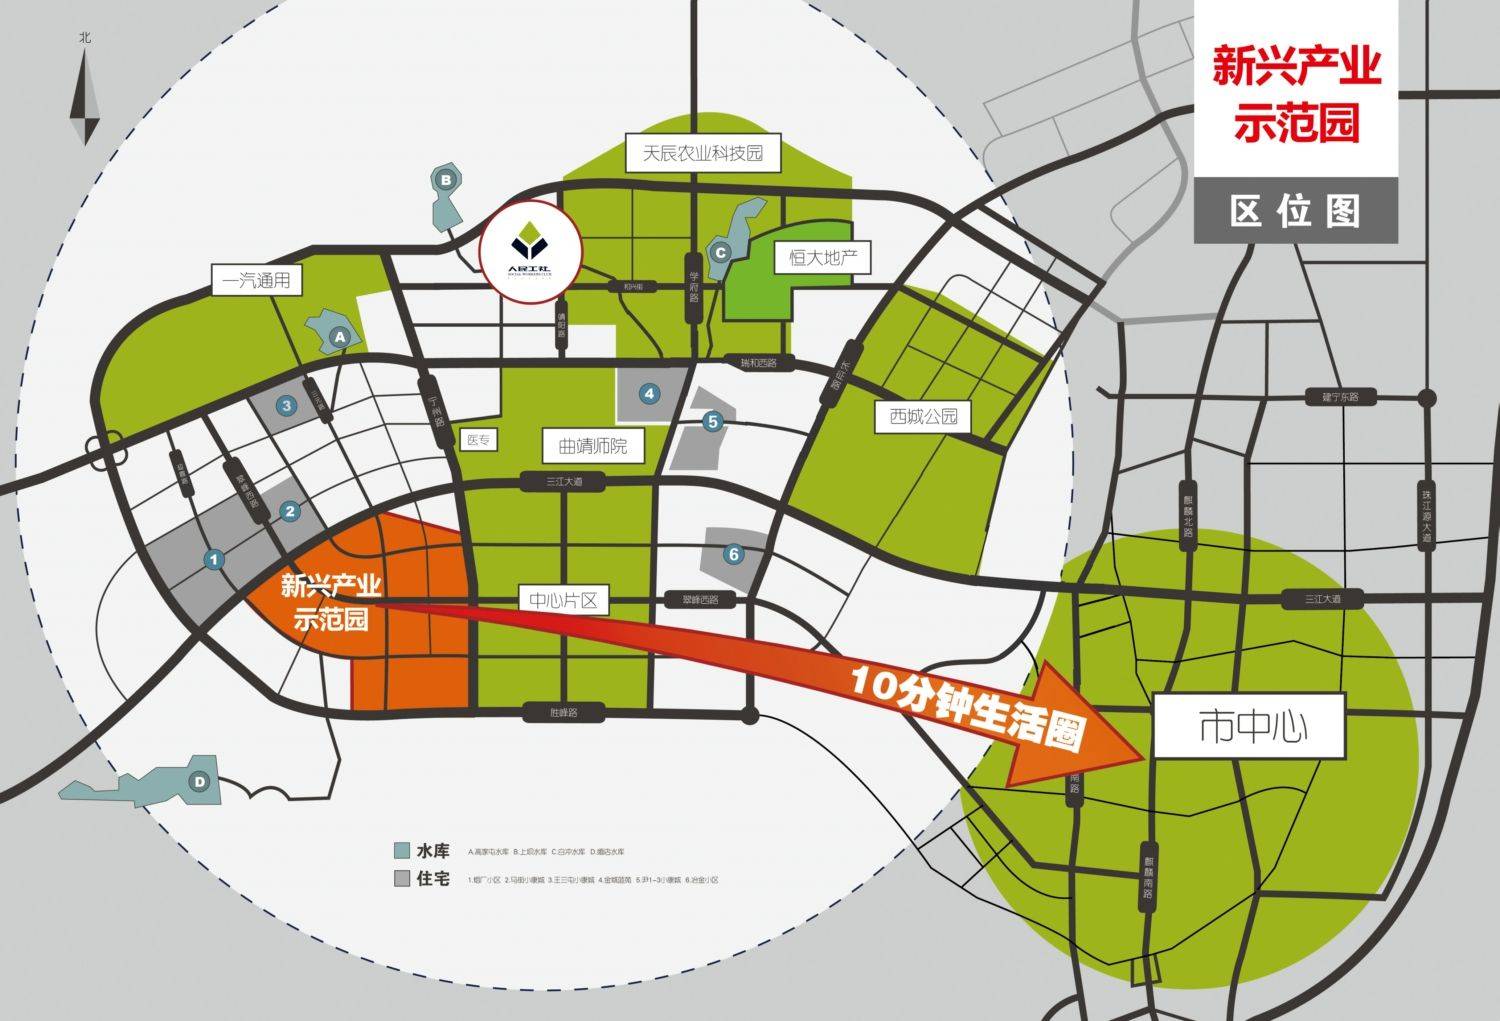 新兴产业示范图 西城区 看规划,西边以后可能是连接沾益和马龙的城市